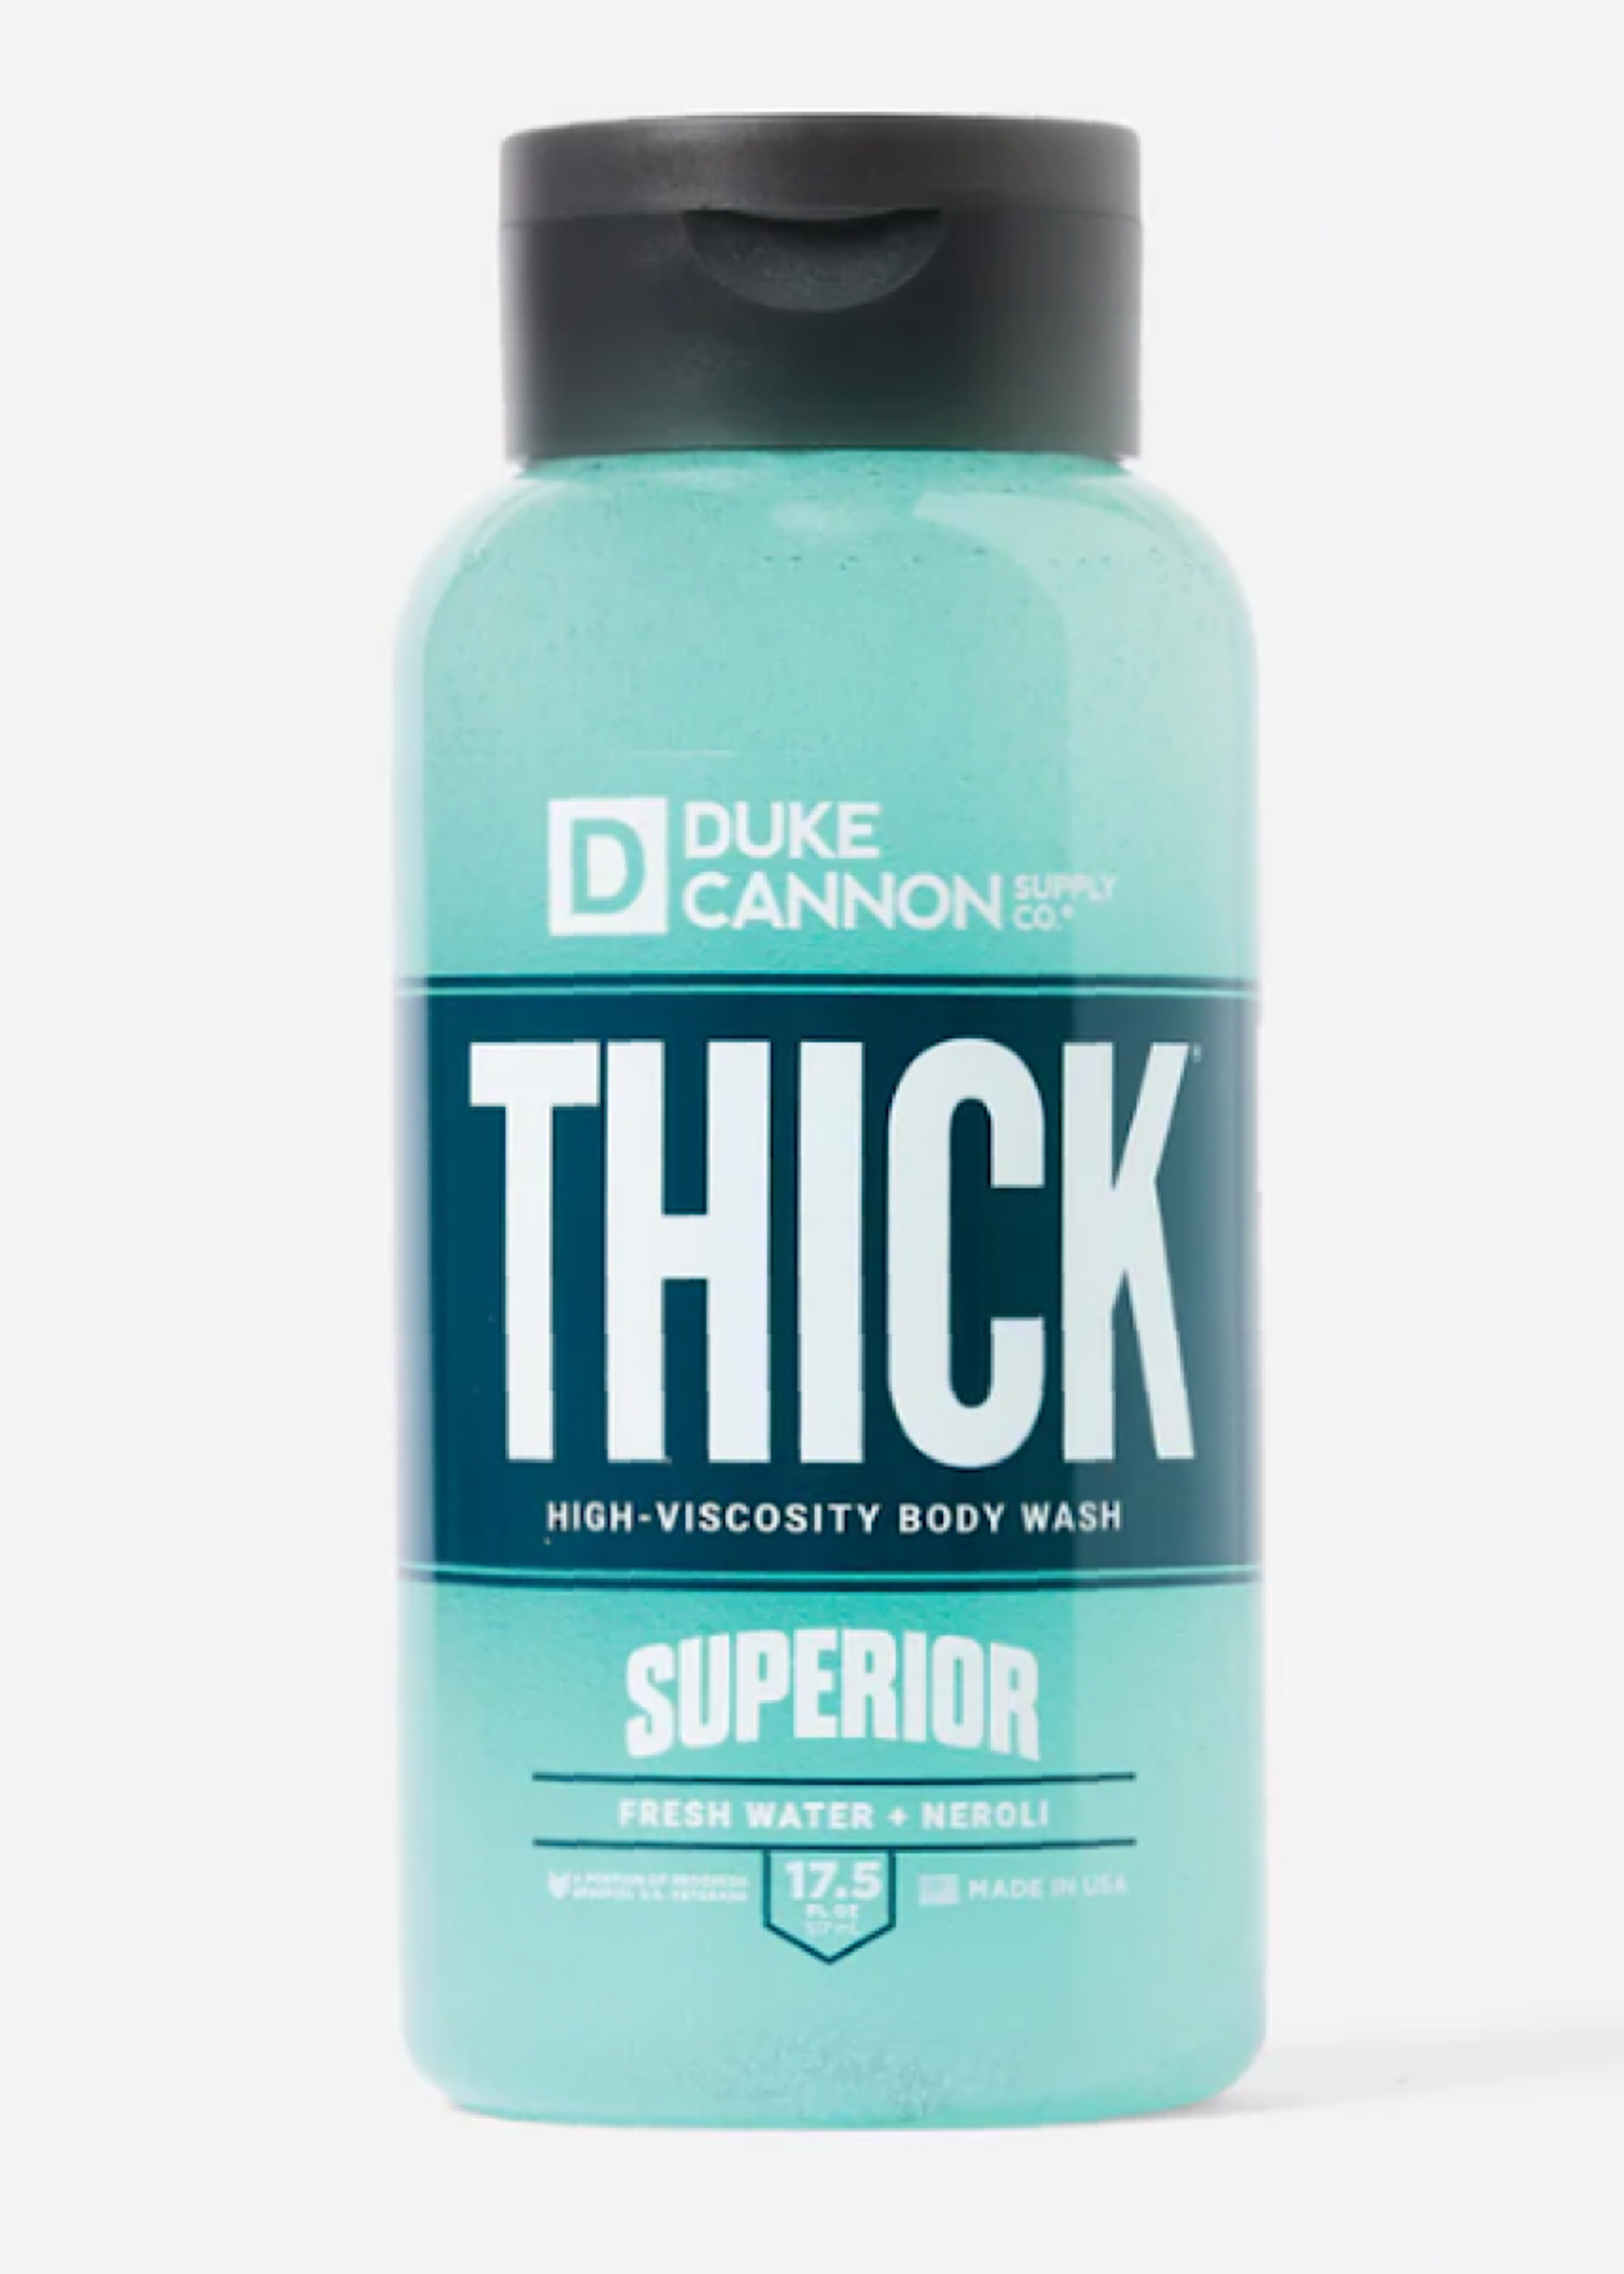 Duke Cannon DC Thick Body Wash - Superior